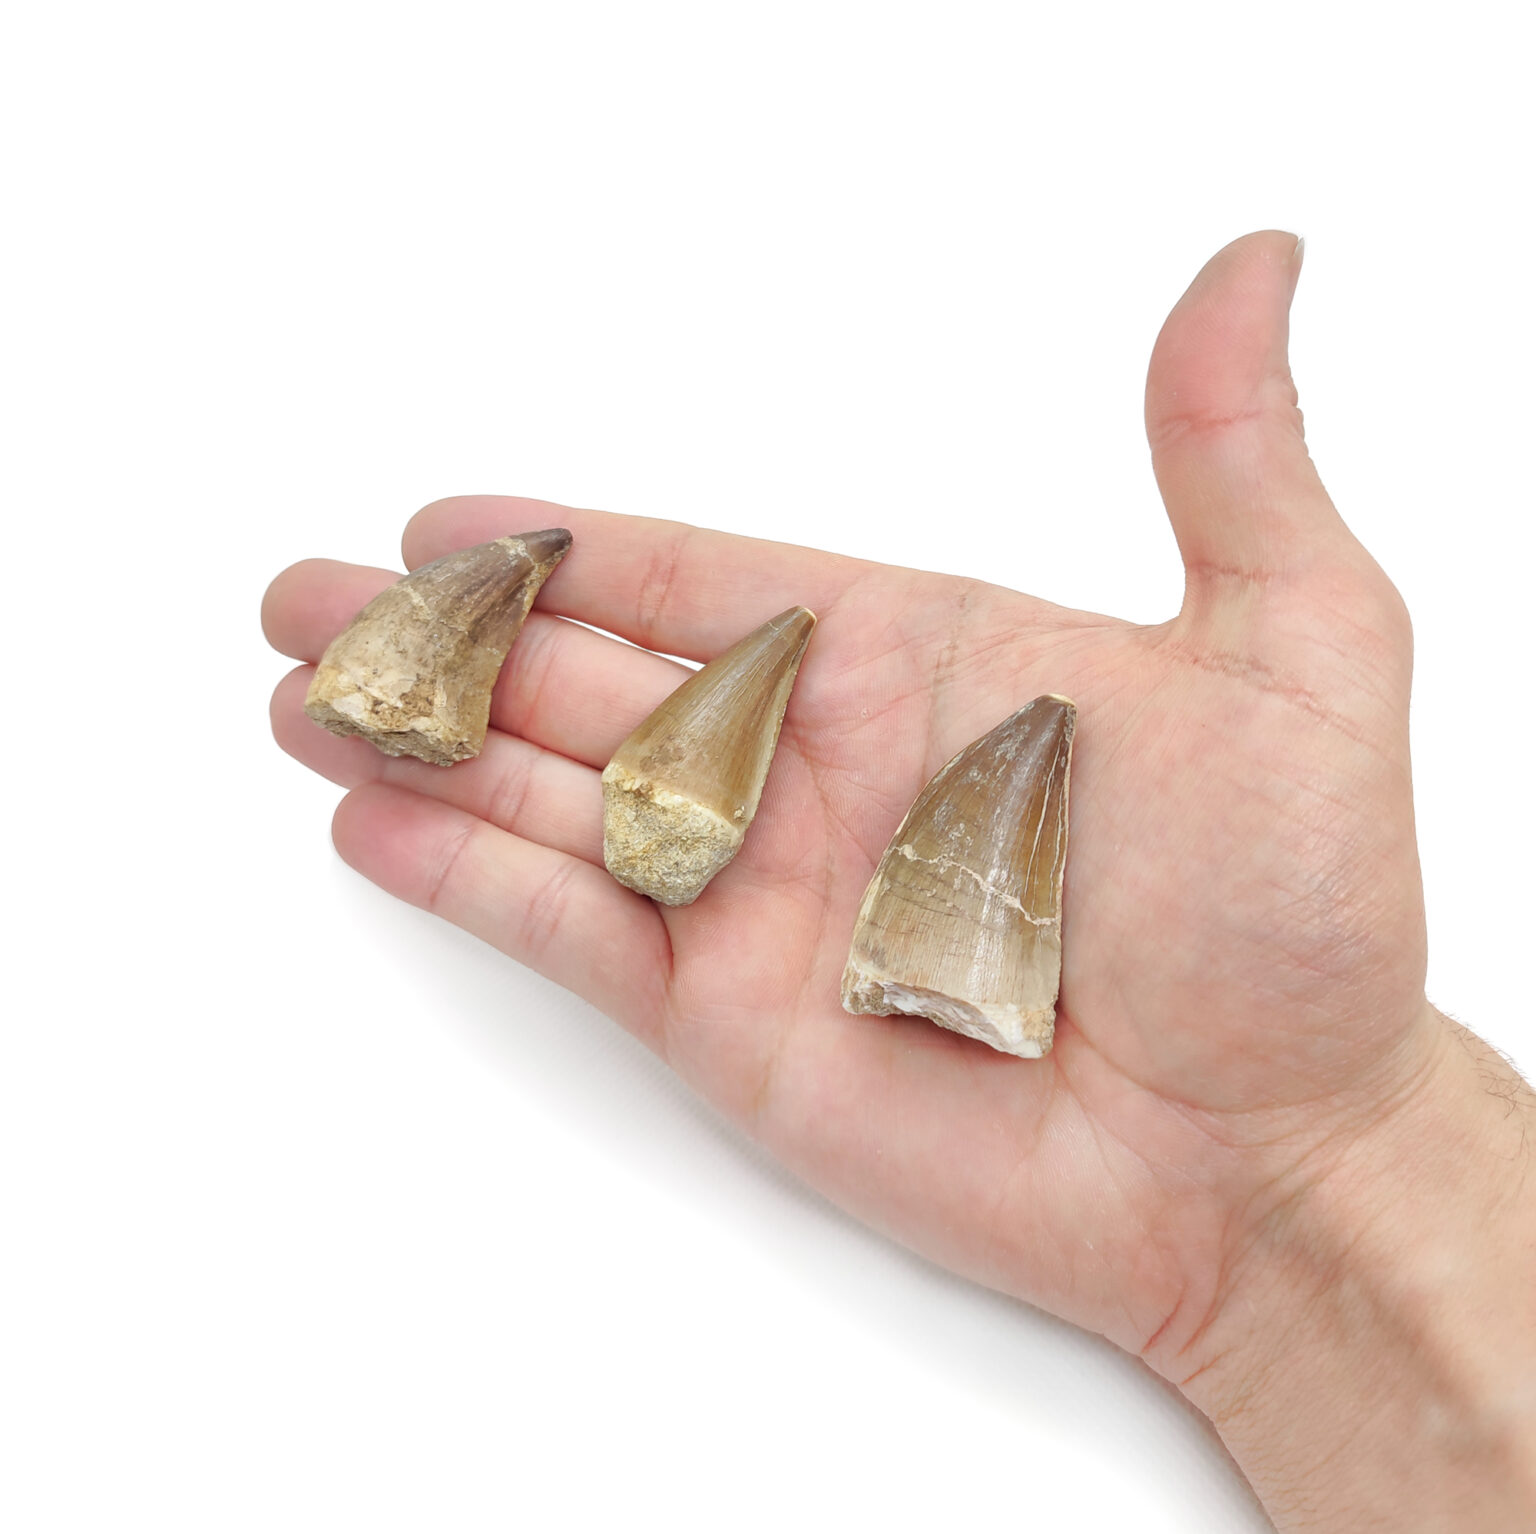 3 Große Mosasaurus Zahn Fossile. Diese sind spitz & beige bis knochenfarben.